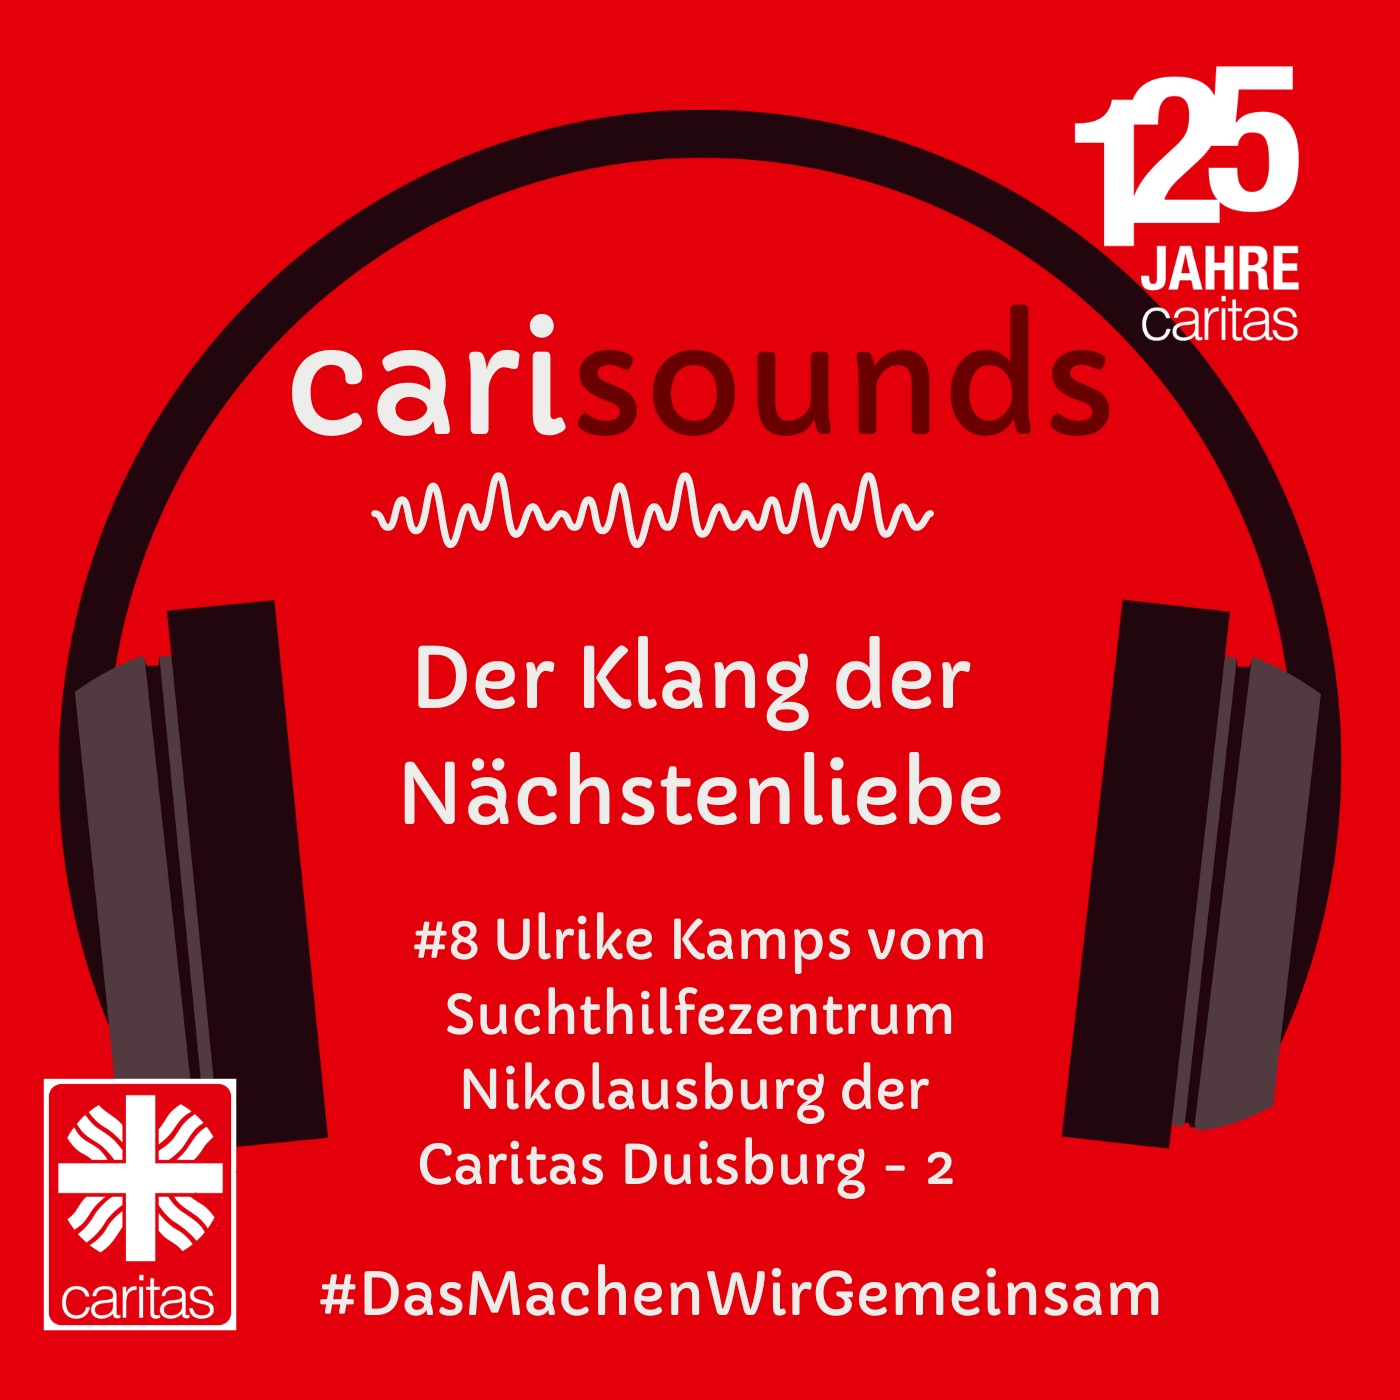 #8 carisounds - Der Klang der Nächstenliebe - Ulrike Kamps vom Suchthilfezentrum Nikolausburg der Caritas Duisburg